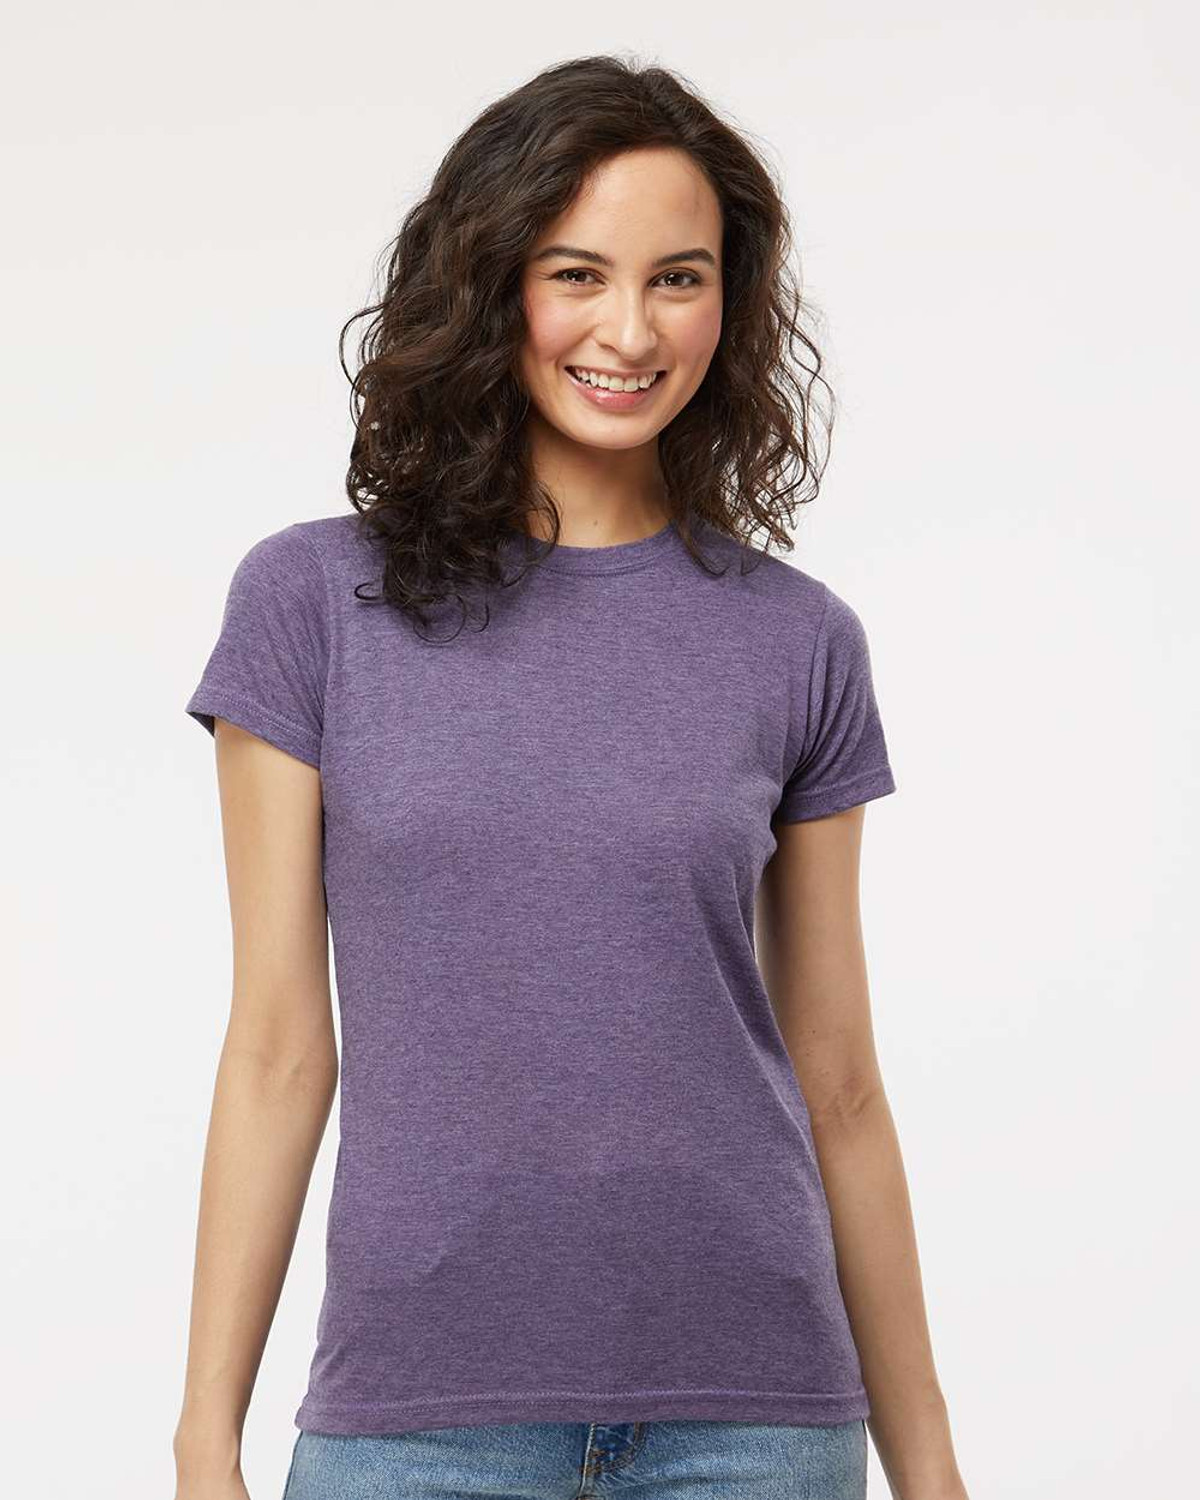 M&O 3540 Women's Deluxe Blend T-shirt